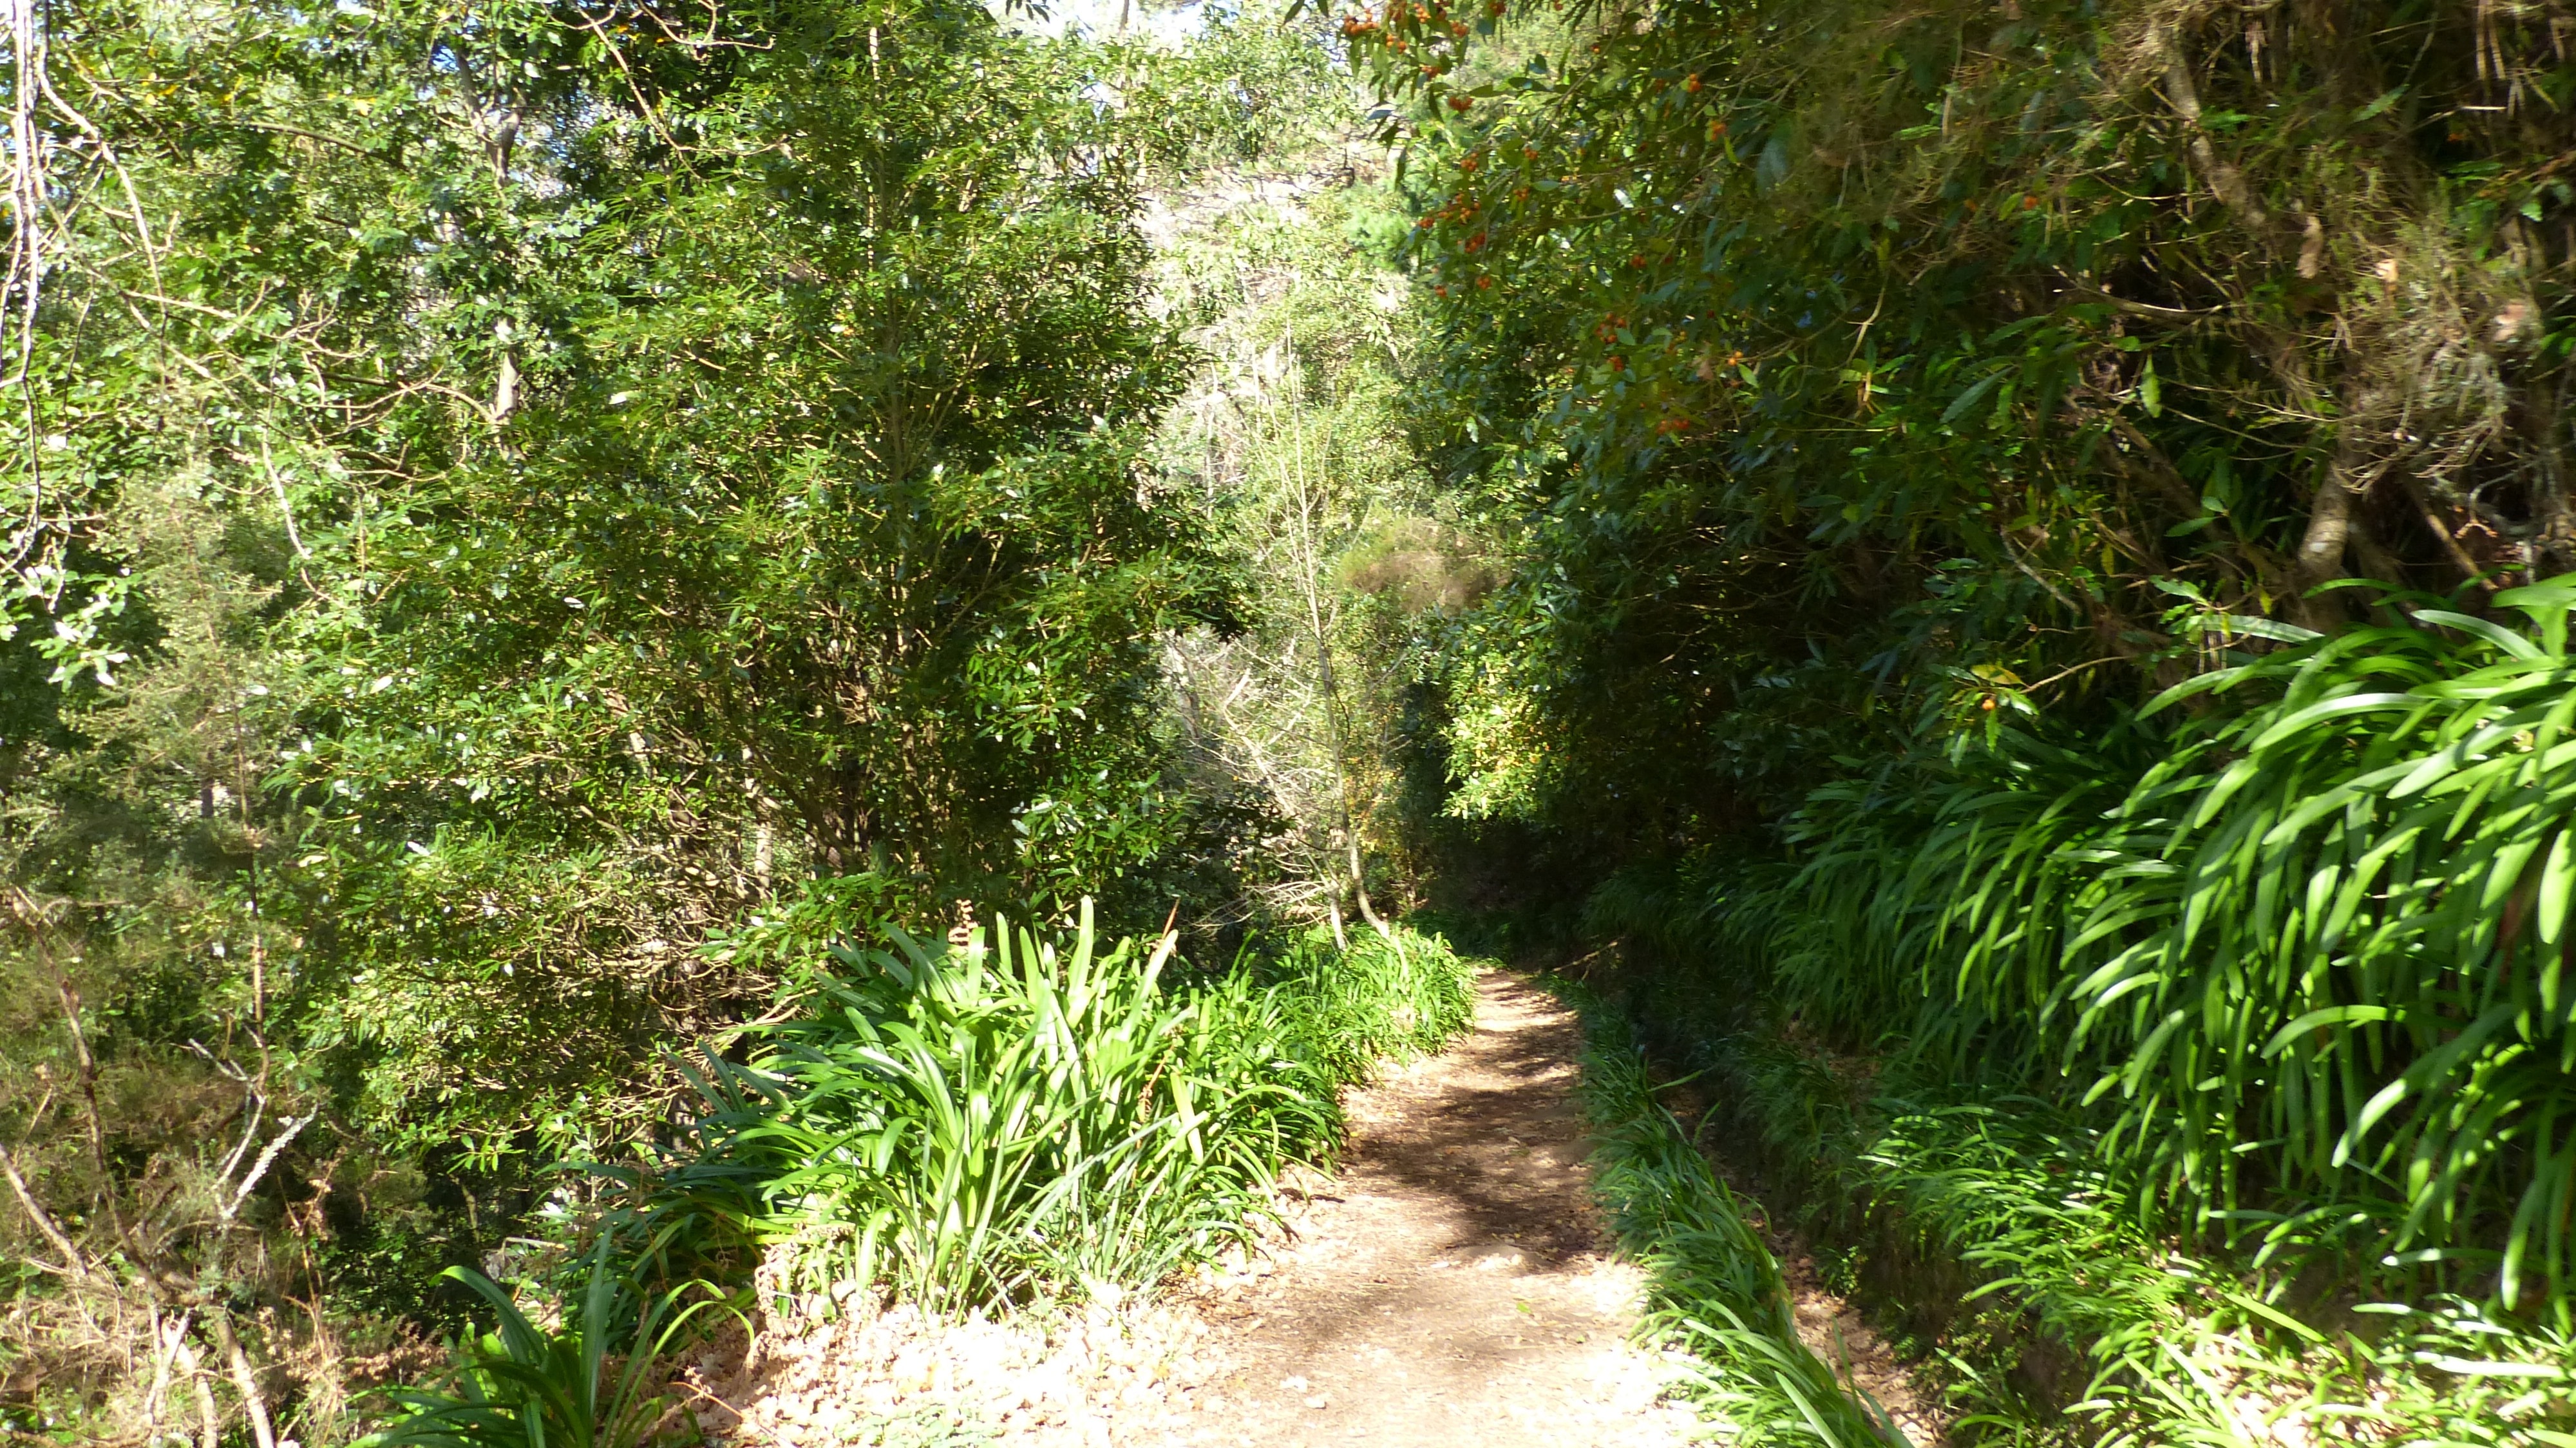 pathway in between green grass